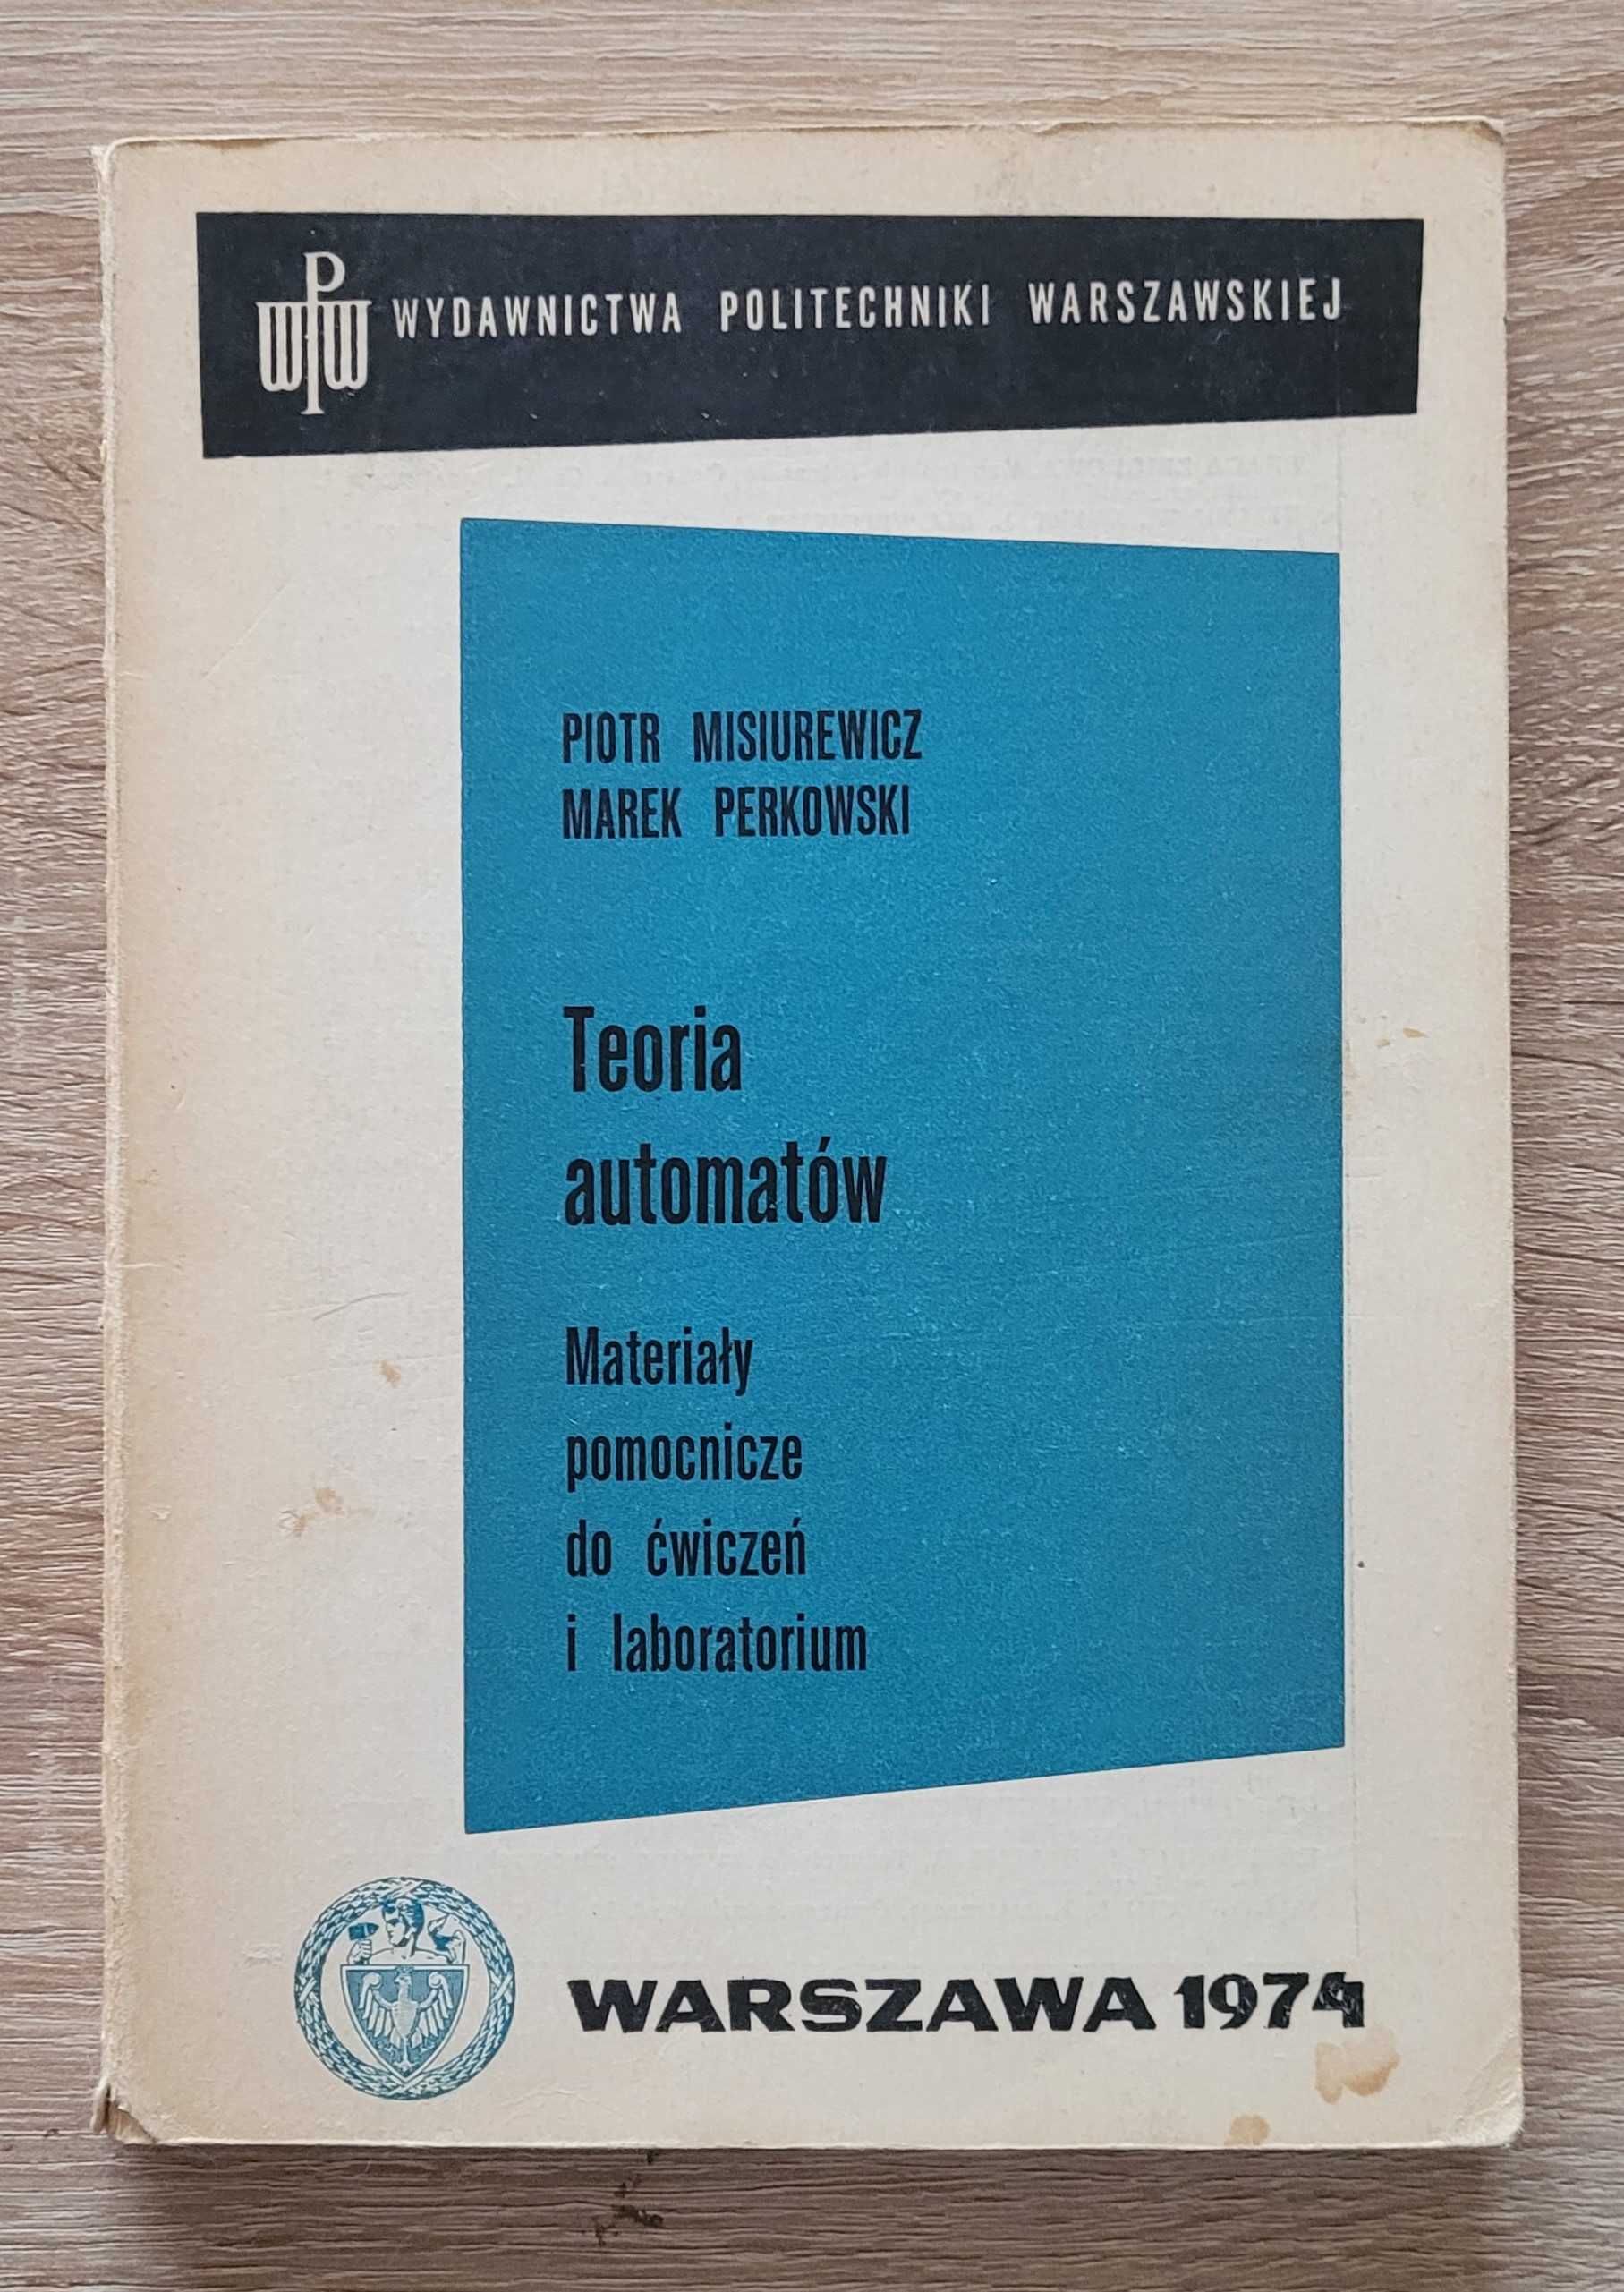 Ksiazka "Teoria automatow" Misiurewicz, Perkowski